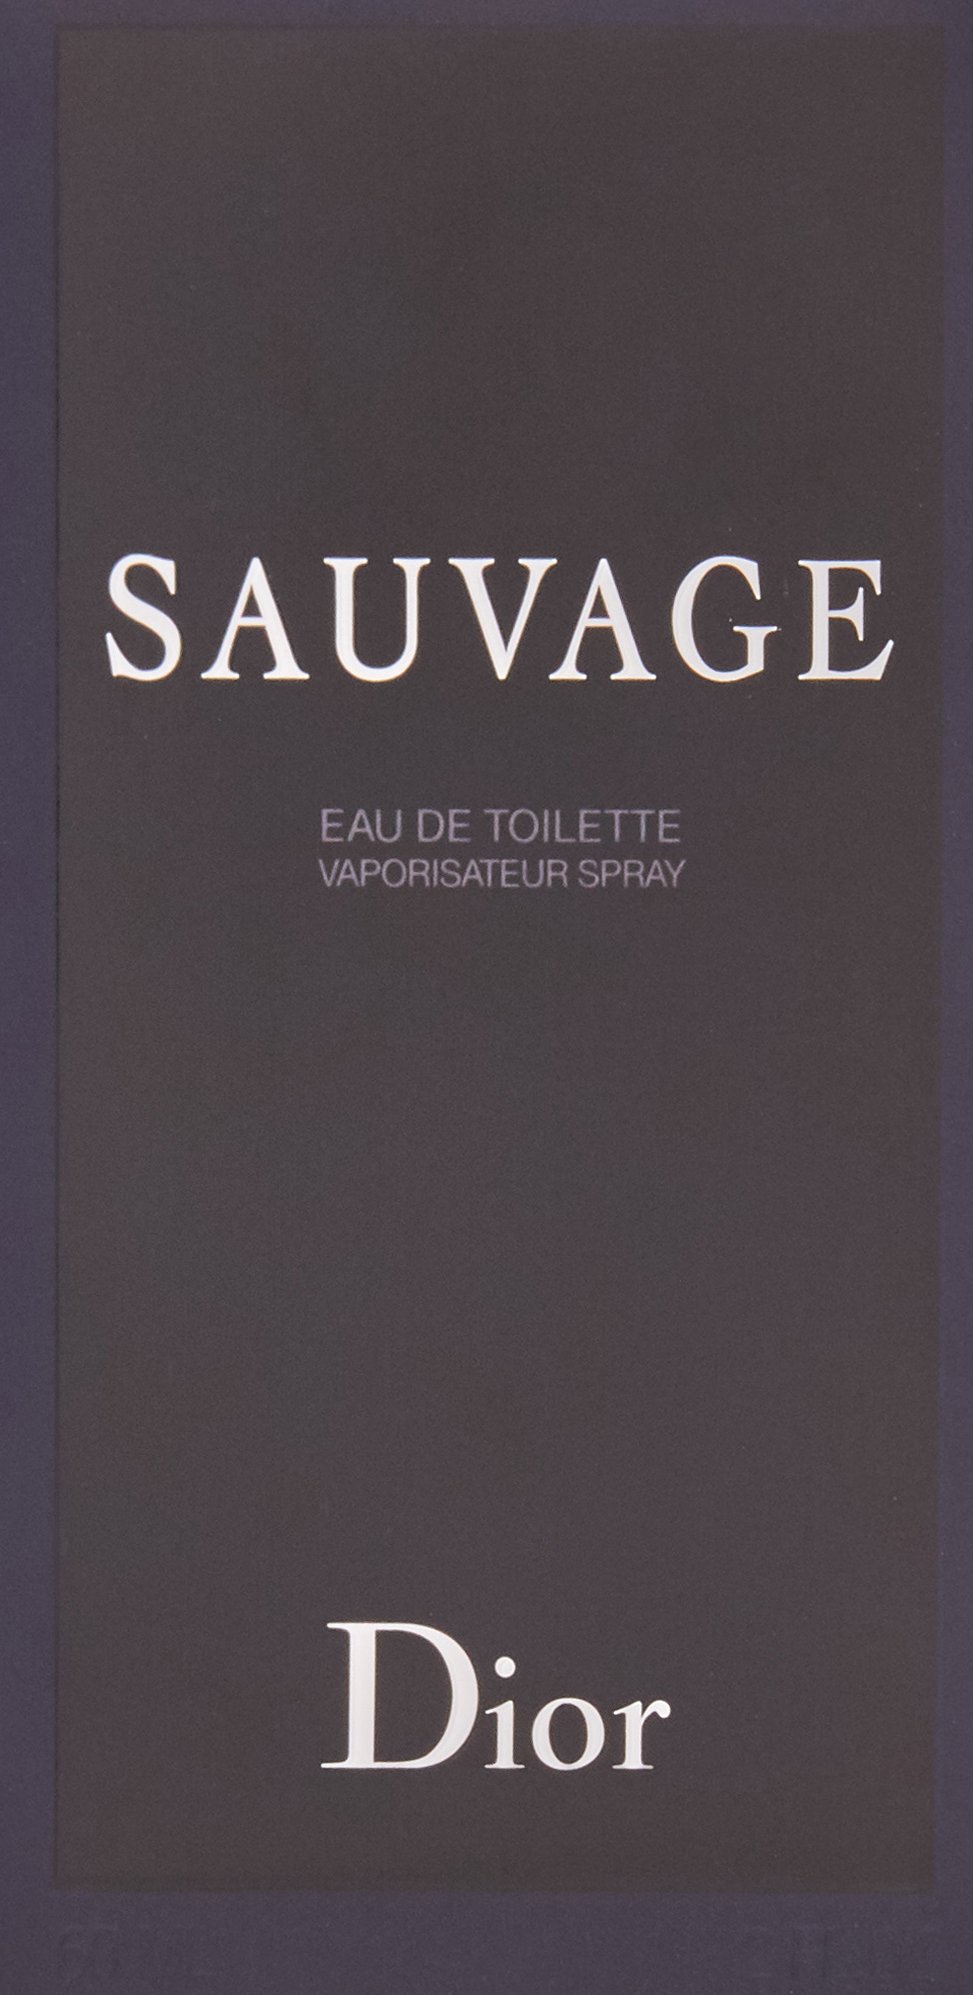 Christian Dior Sauvage Eau de Toilette for Men, 2 Ounce